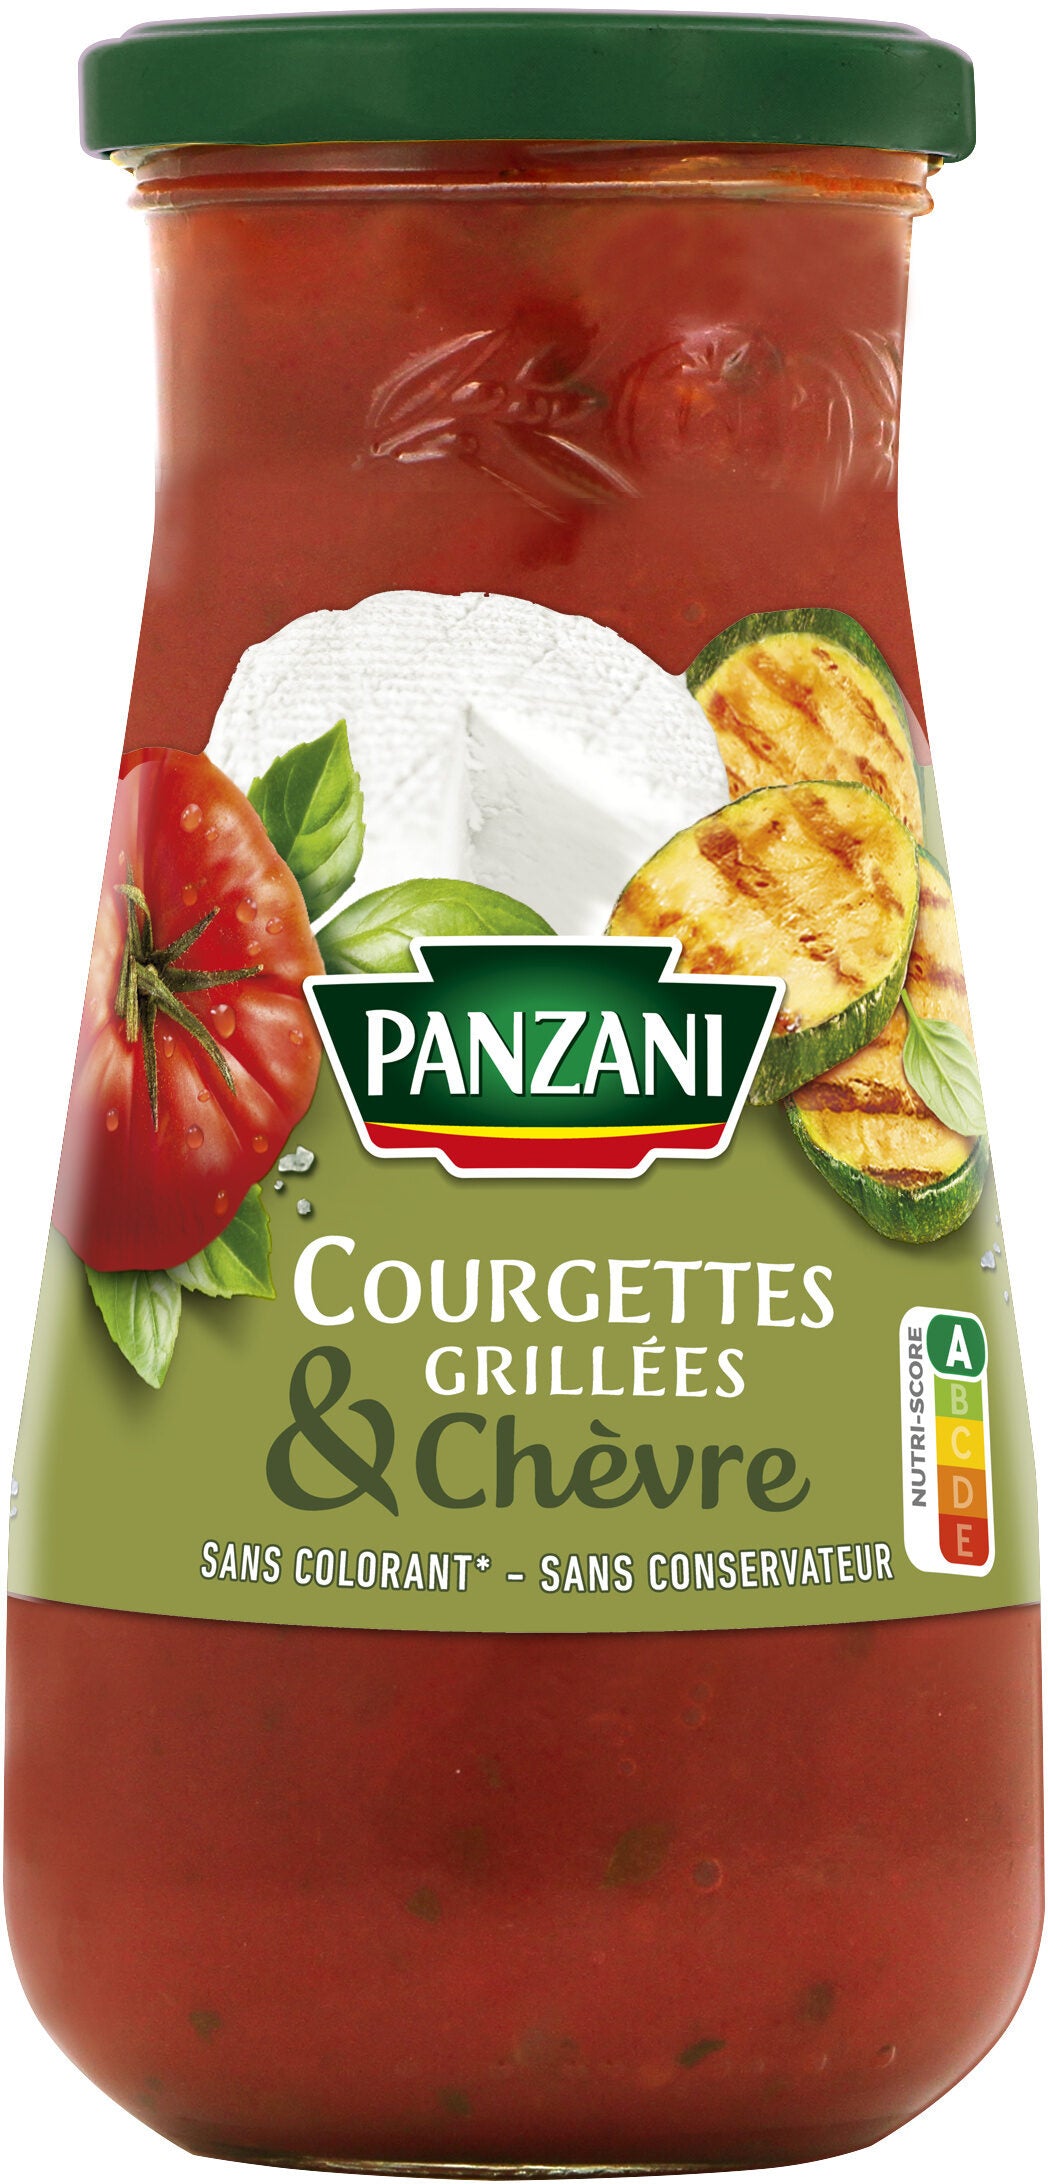 Panzani 

Sauce Tomate Courgettes Grillées et Chèvre